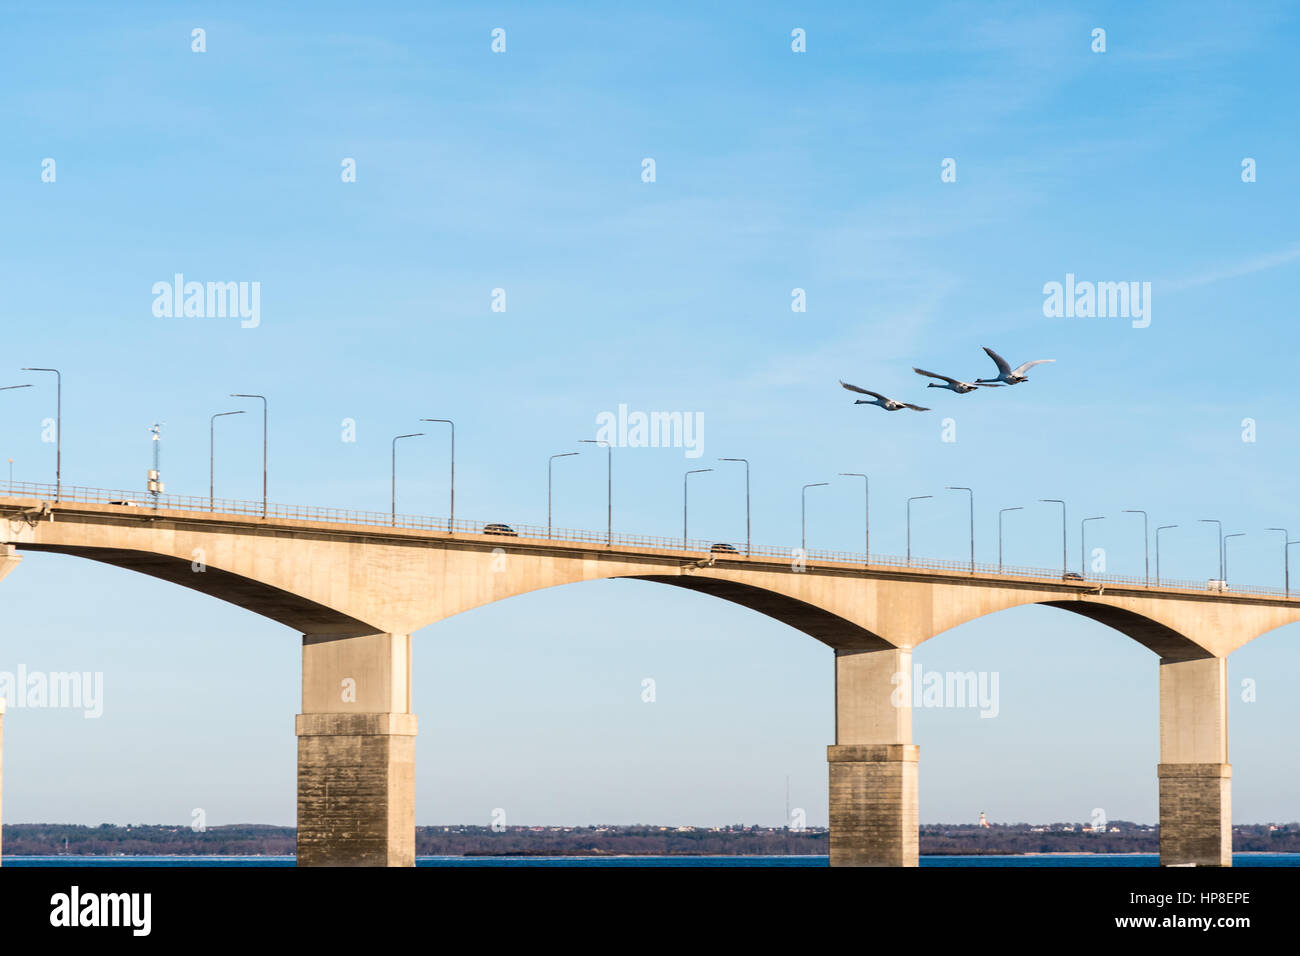 3 Höckerschwäne überfliegen der Öland-Brücke in Schweden. Die Brücke verbindet die Insel Öland mit dem Festland Schweden. Stockfoto